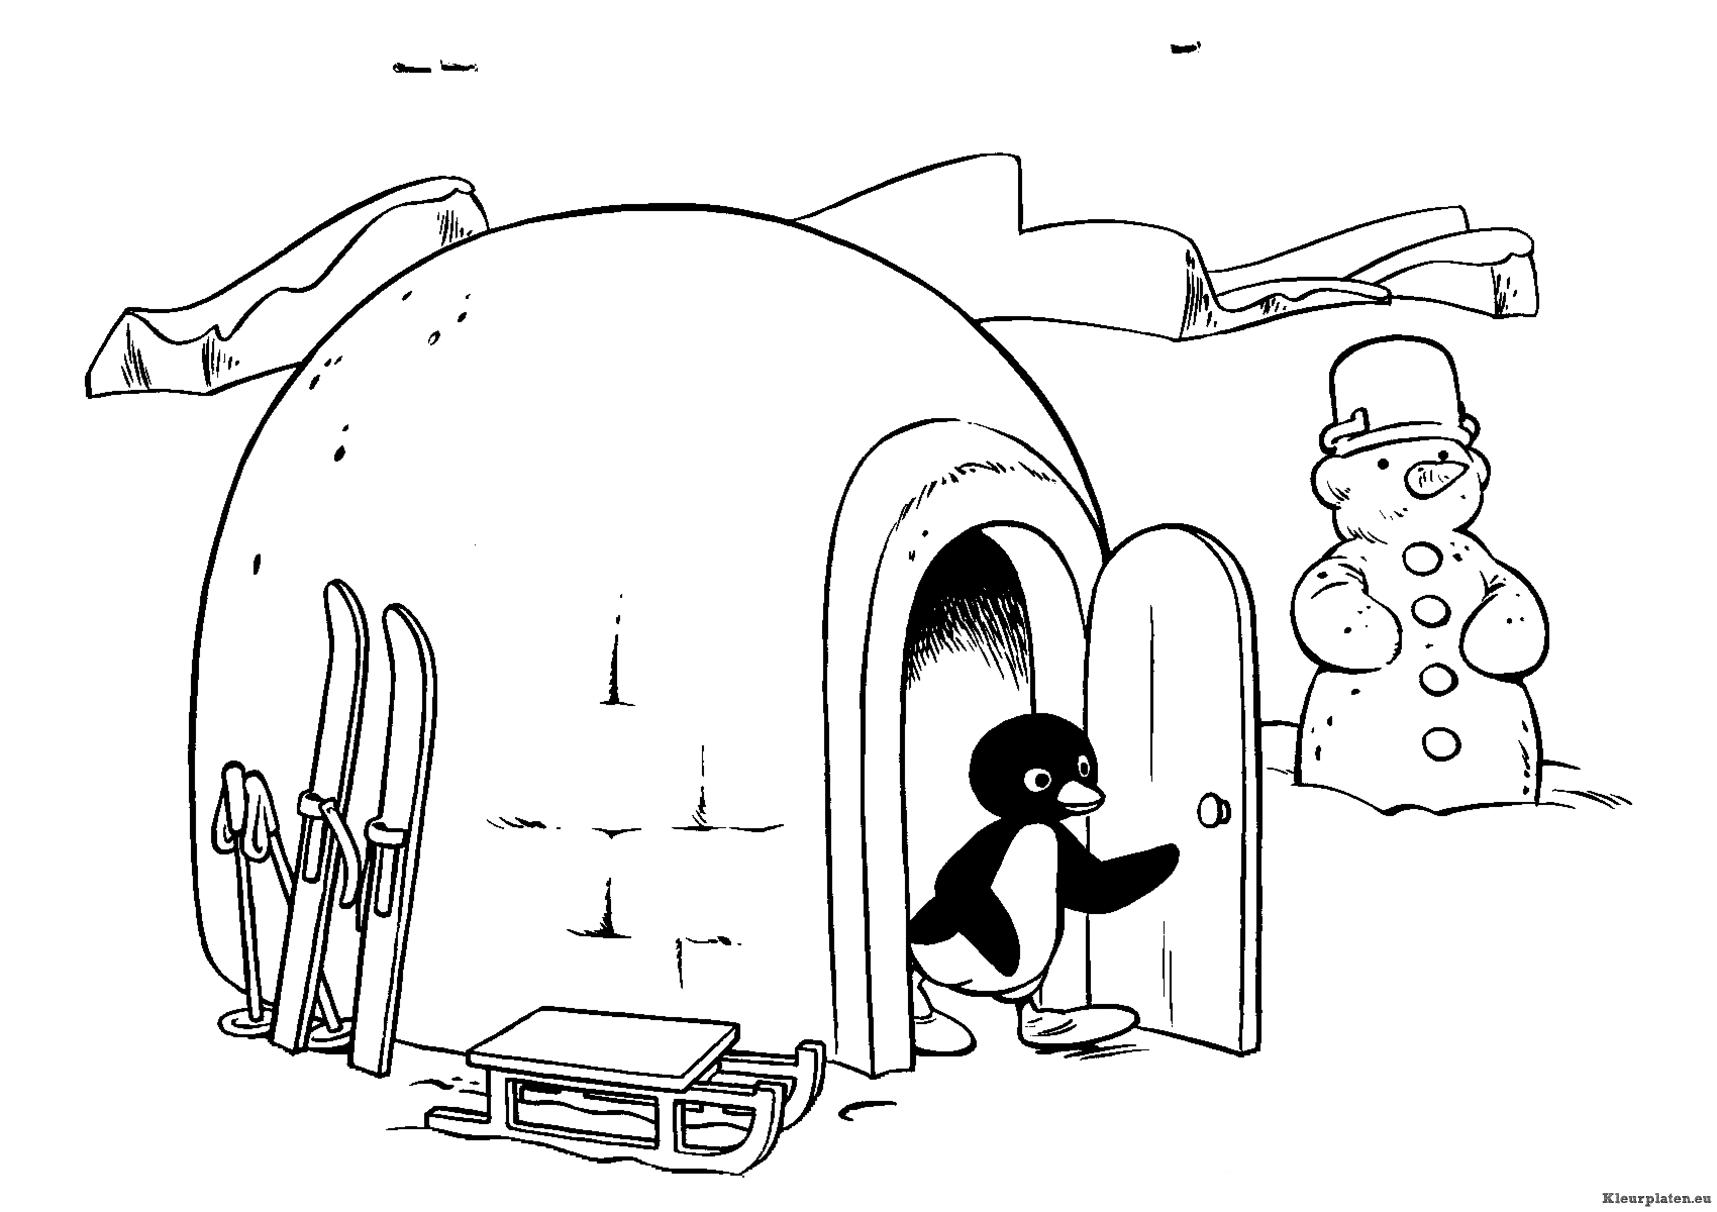 Pingu kleurplaat